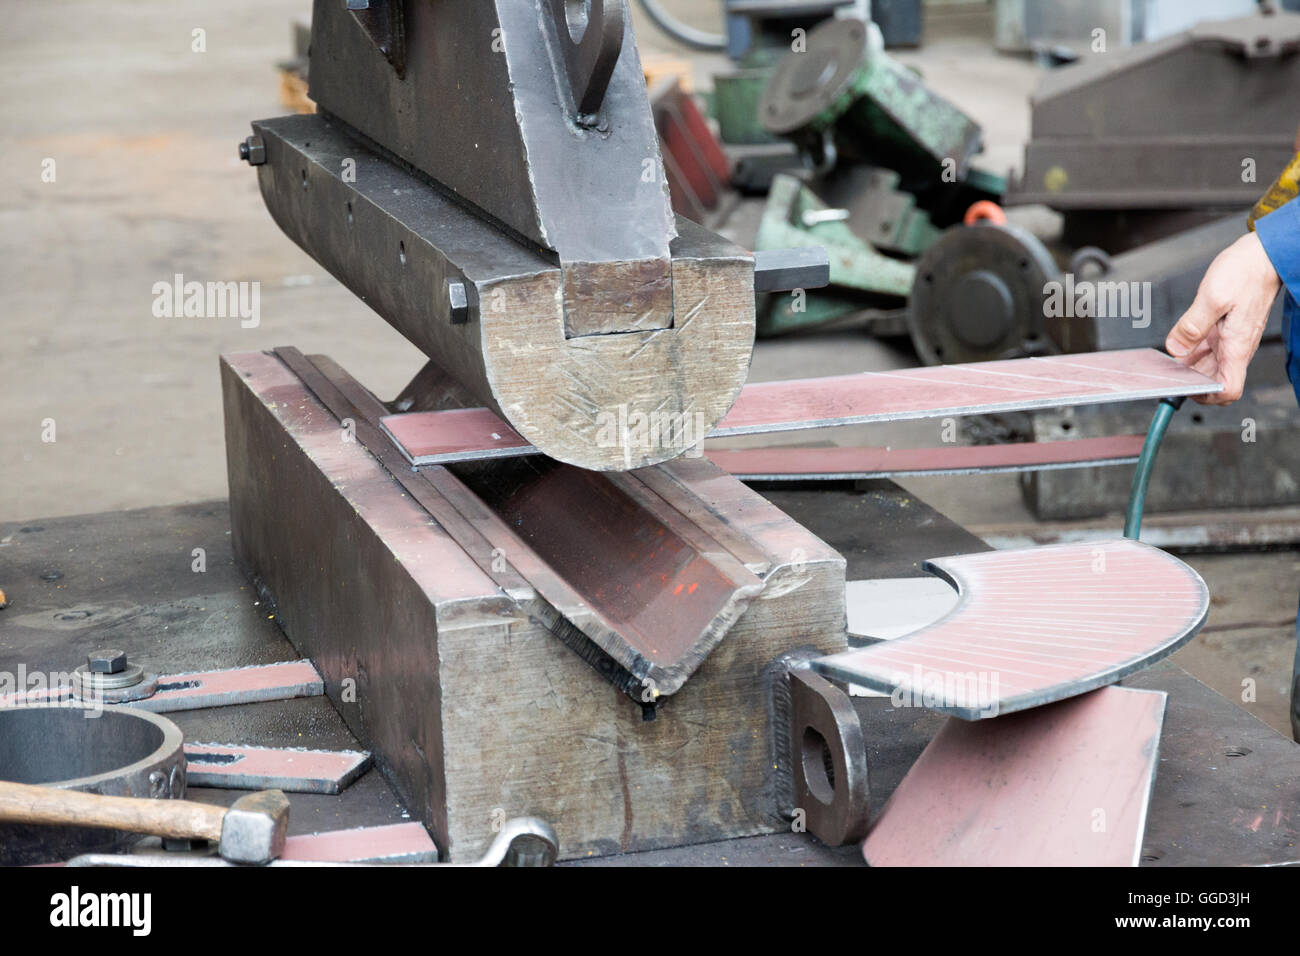 Metal bending machine in a ship repair dock Stock Photo